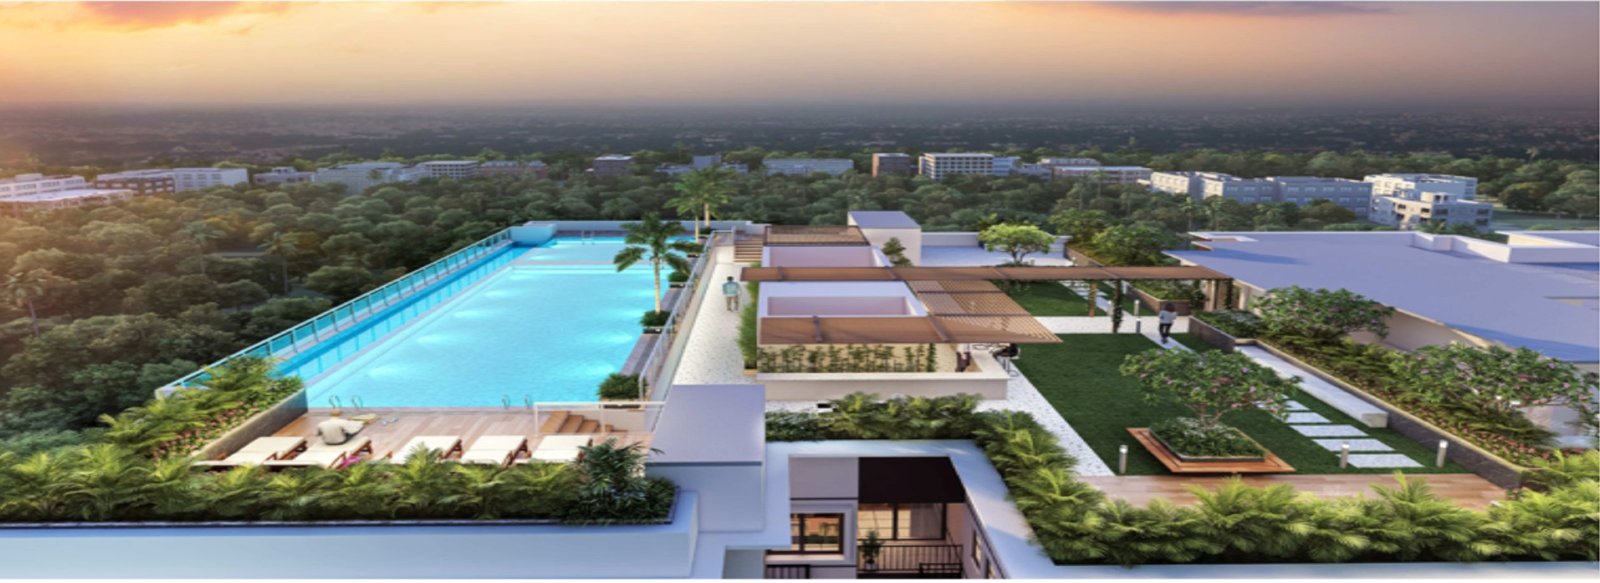 Terrace View,Roof top amenities 